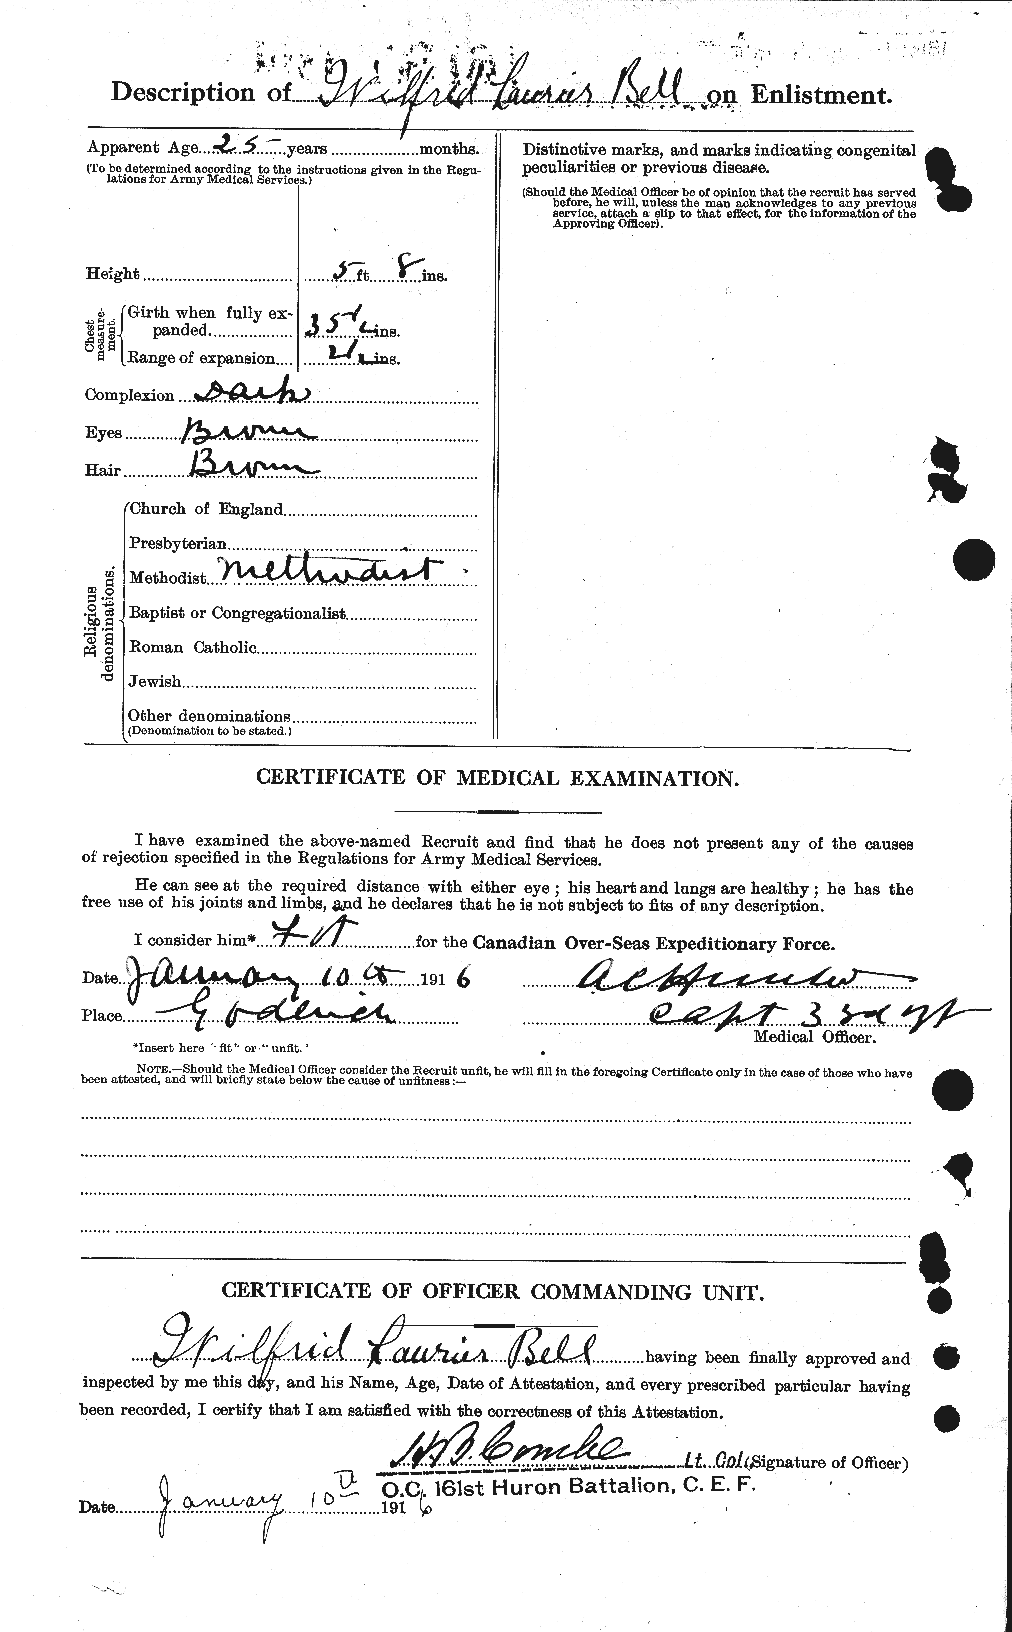 Dossiers du Personnel de la Première Guerre mondiale - CEC 234804b